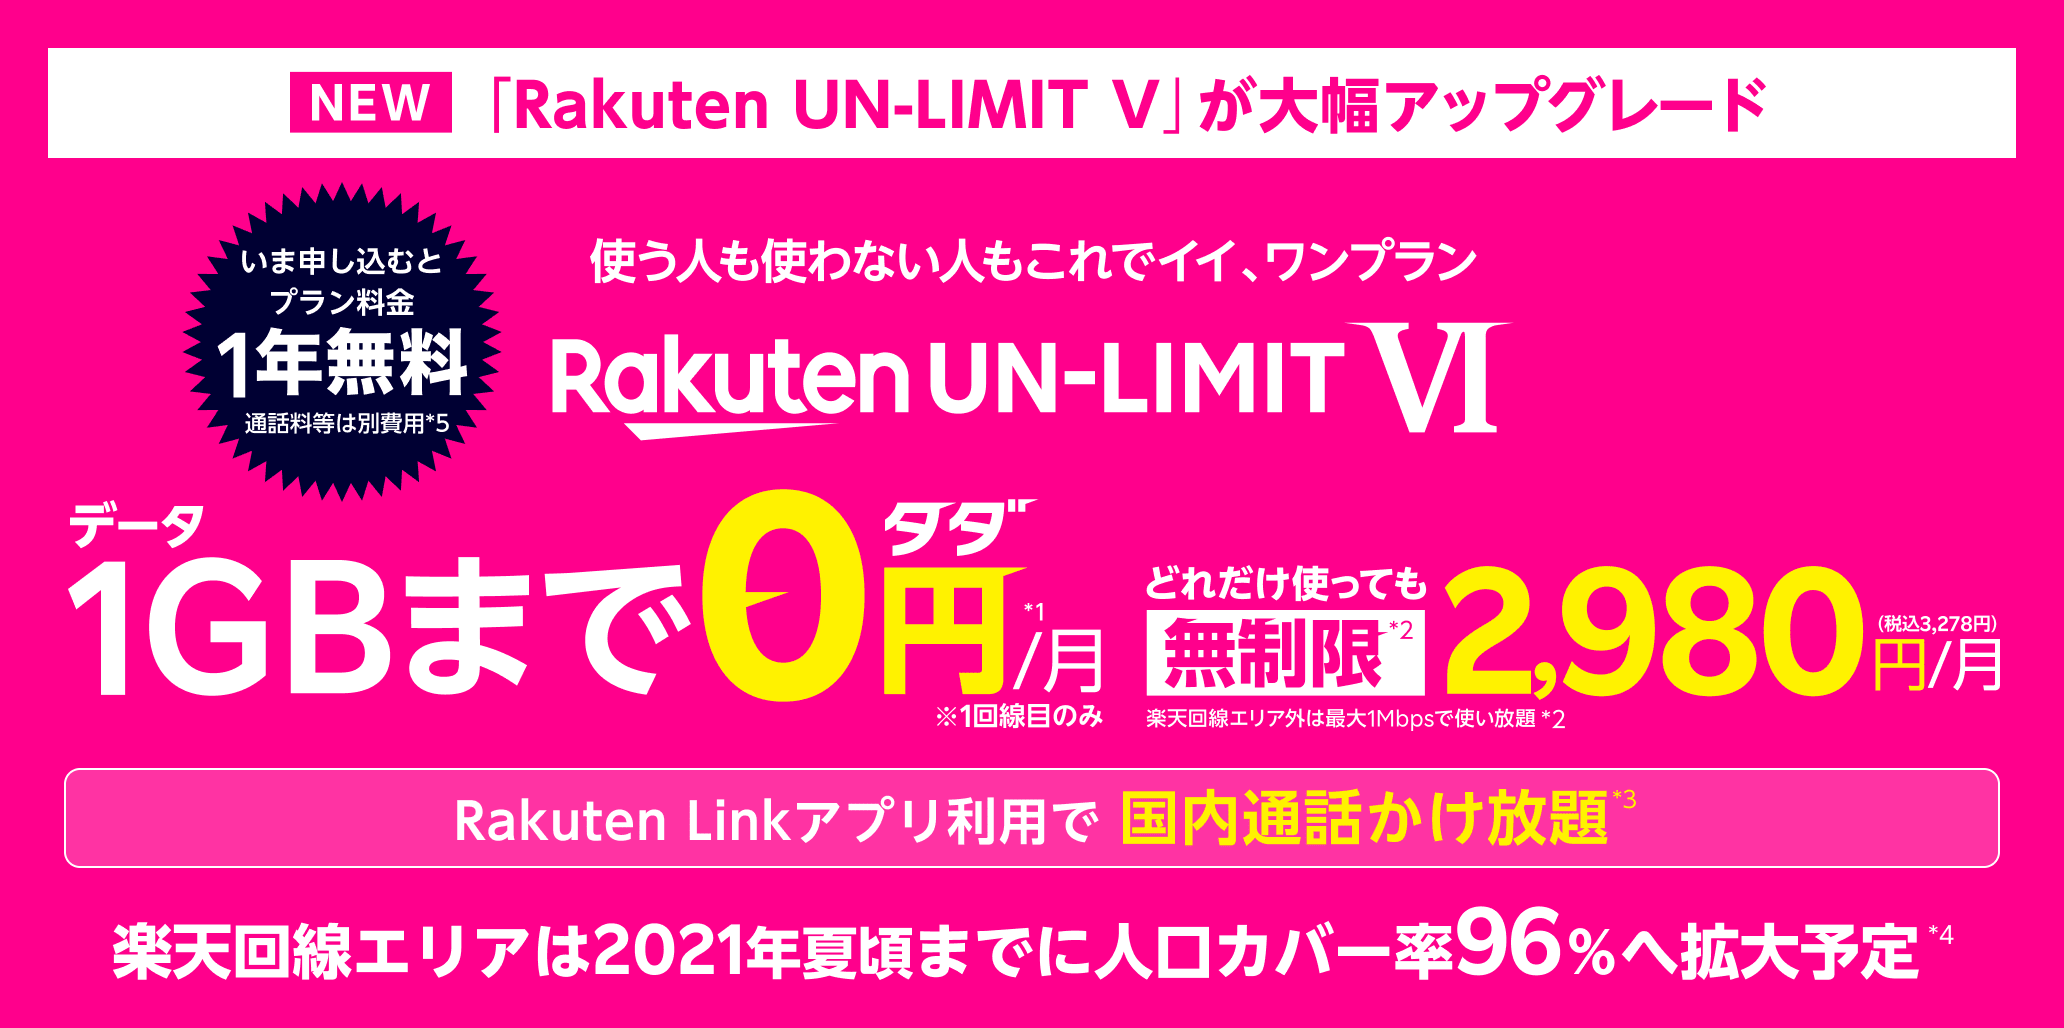 料金そのまま4G+5Gにも使える Rakuten UN-LIMIT V プラン料金2,980円/月が1年無料（300万名対象※通話料等は別費用）